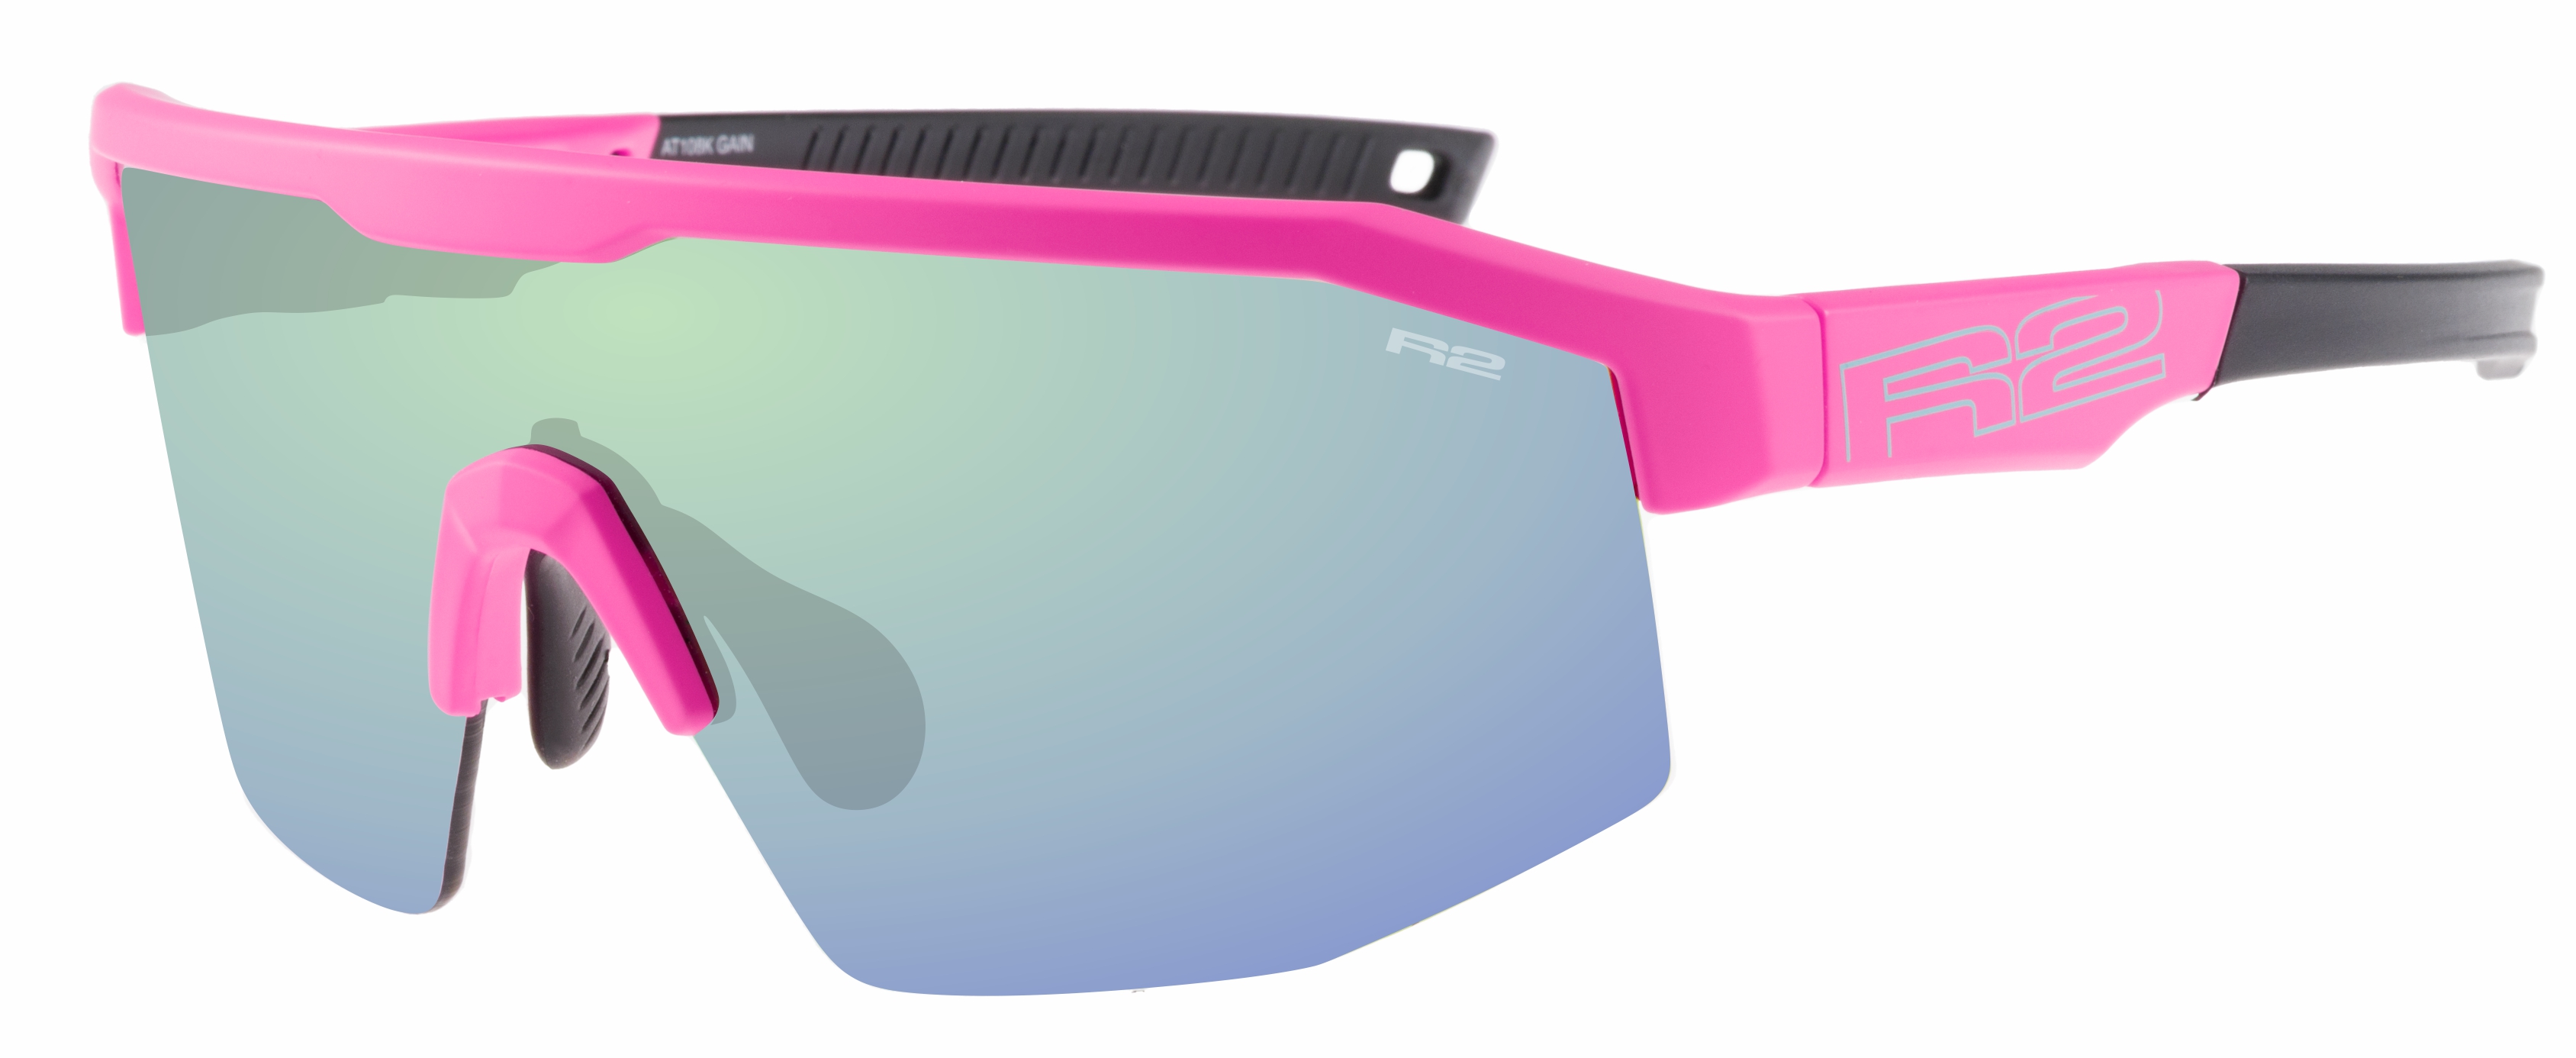 HD sport sunglasses R2 GAIN AT108K standard